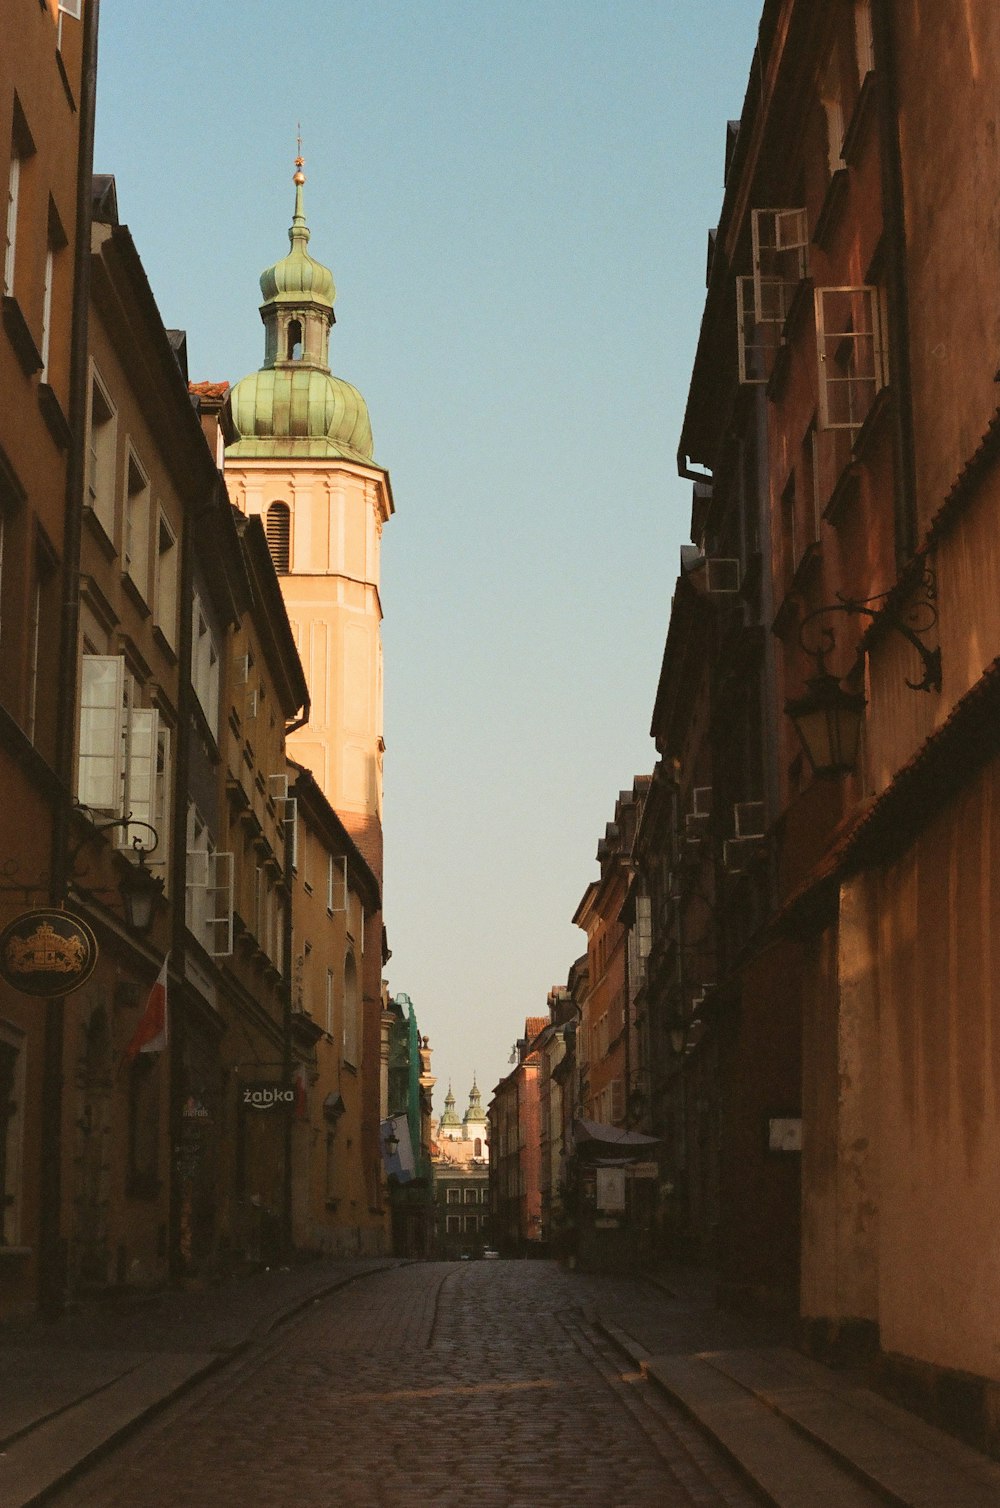 Una stretta strada della città con una torre dell'orologio sullo sfondo